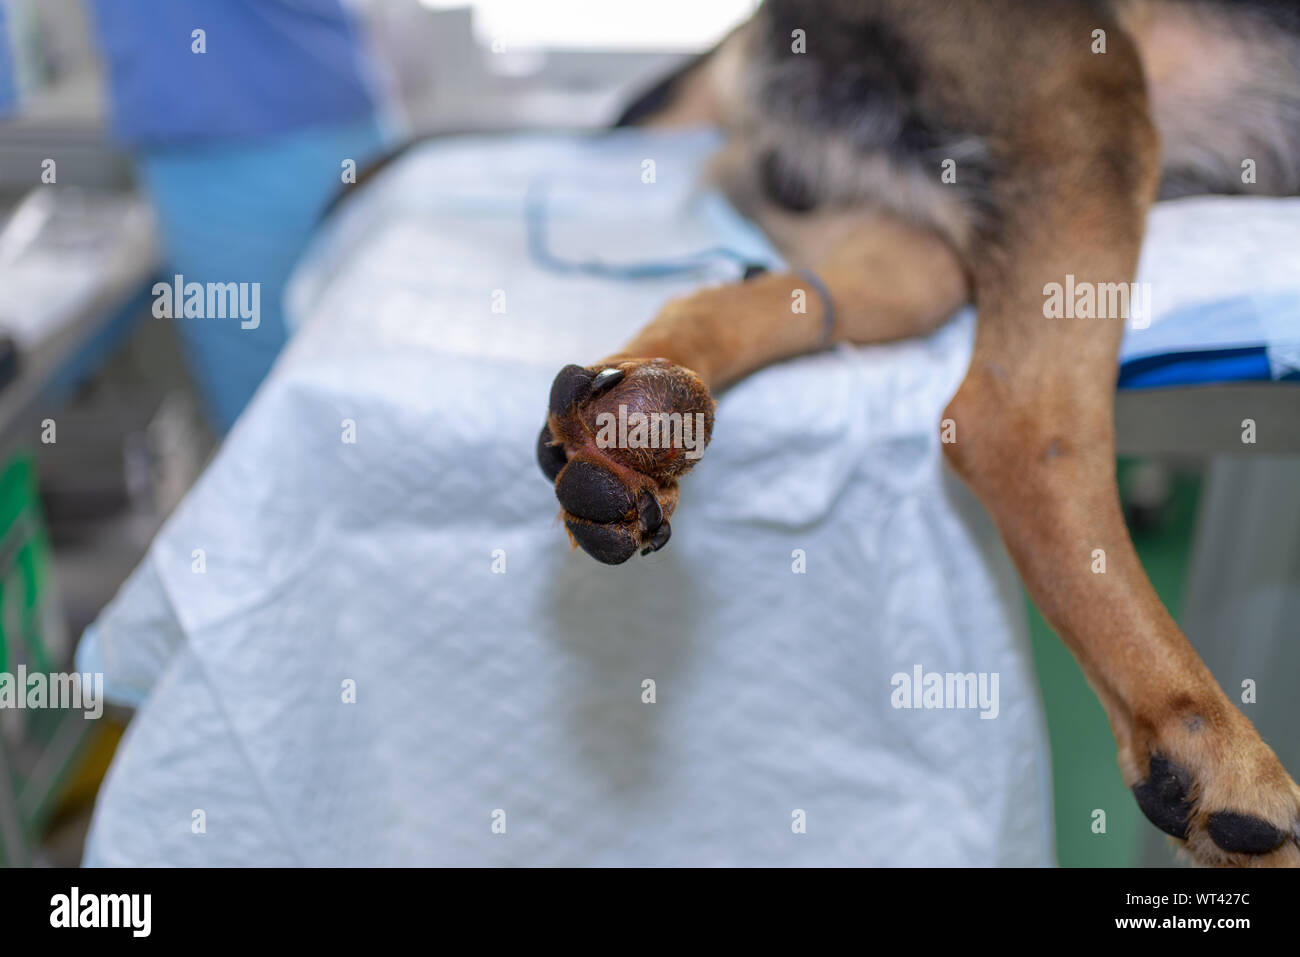 Großen Tumor am Bein Hundes Stockfotografie - Alamy